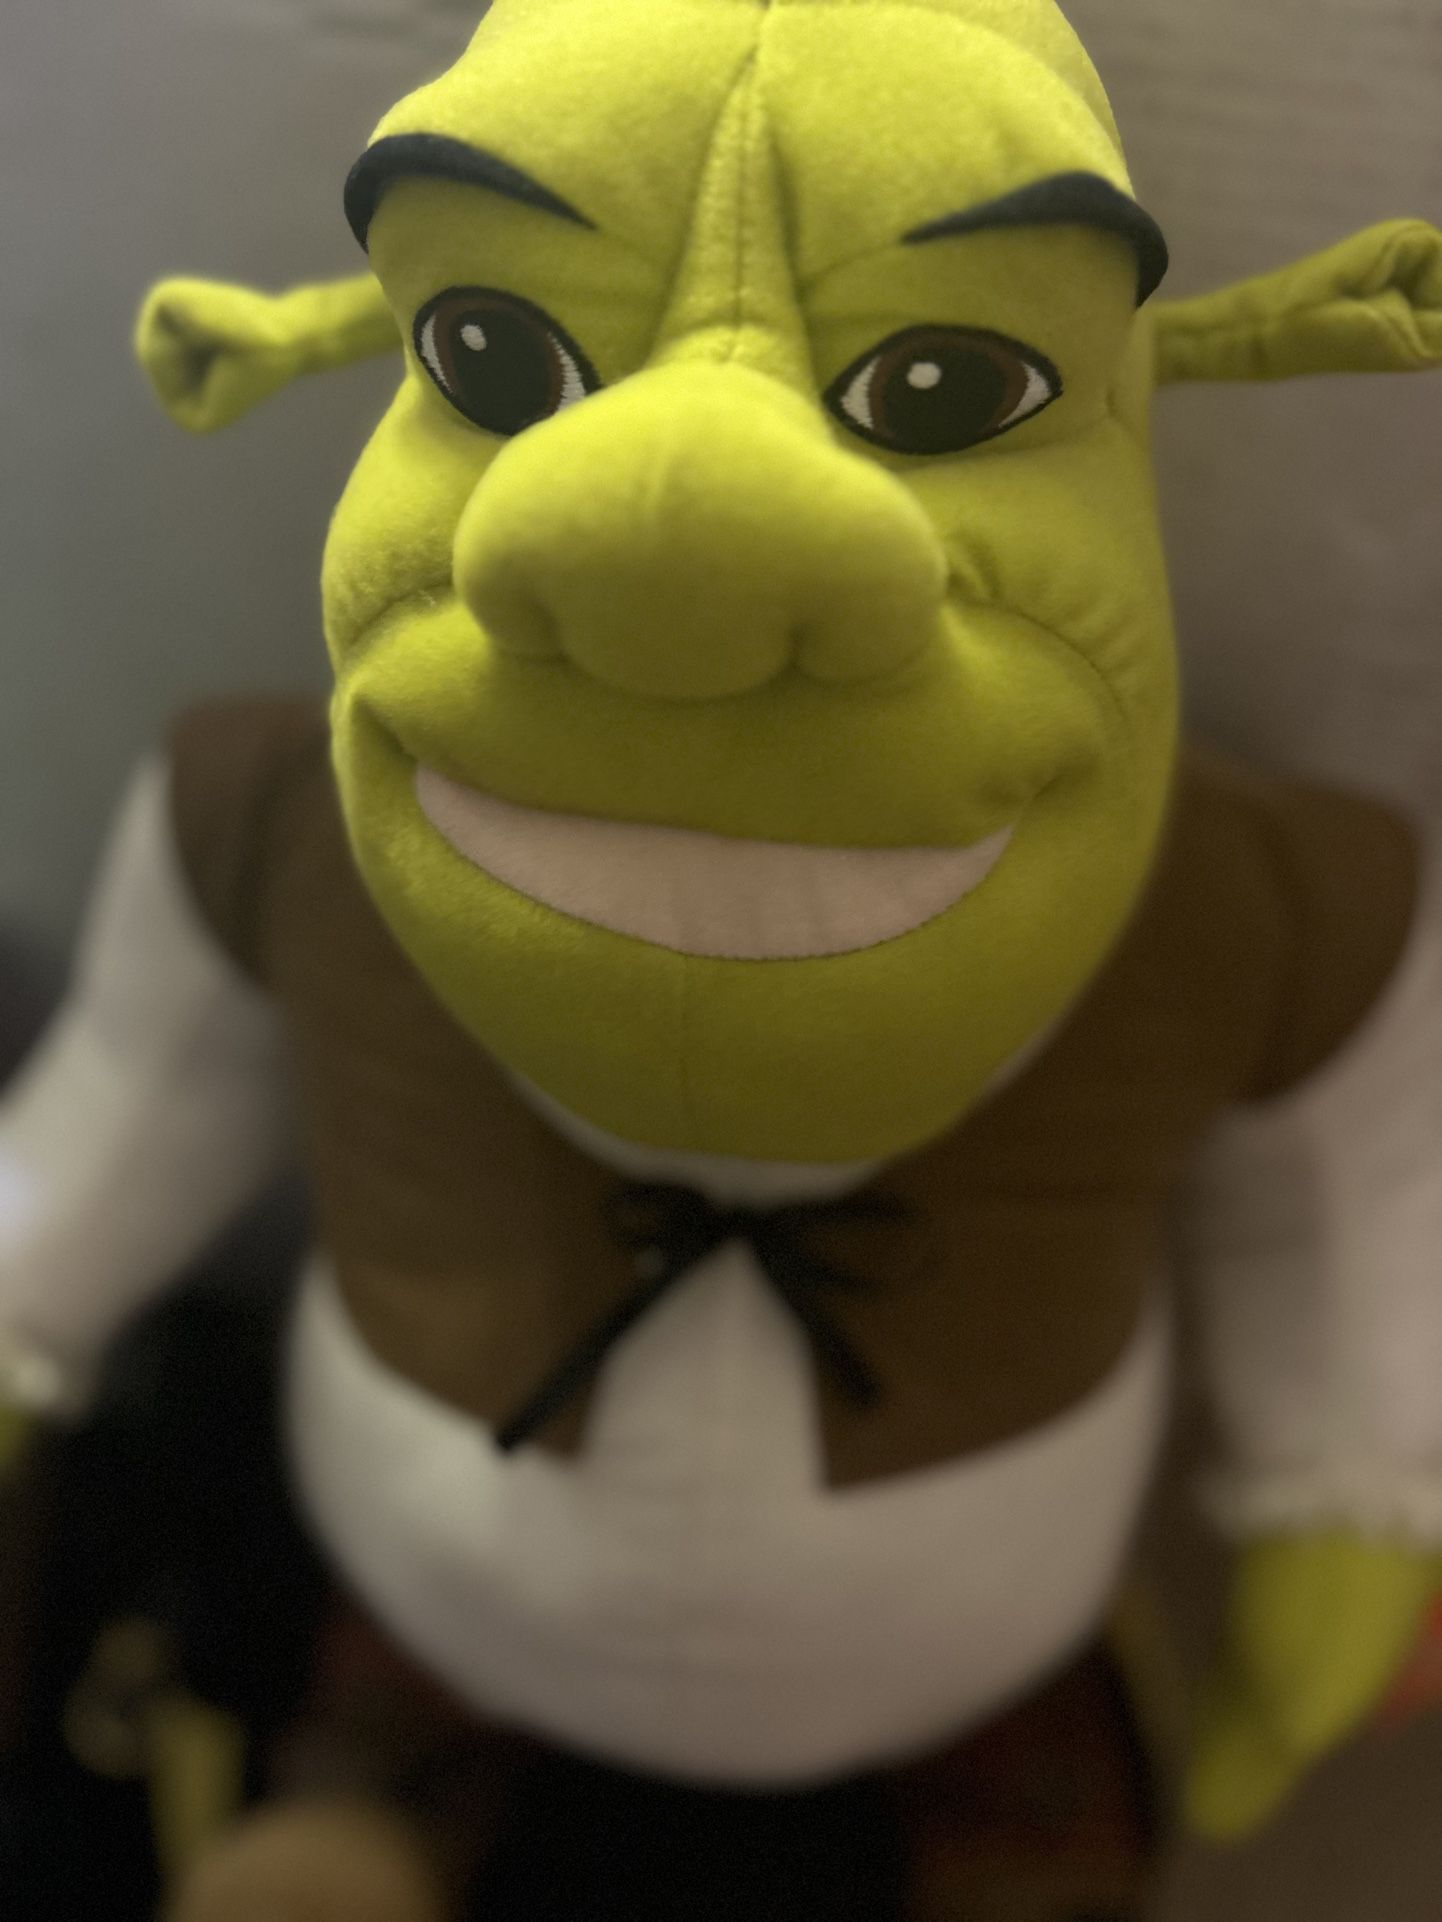 N/D Plush Toys Shrek Ogre Plush Doll Stuffed Pillow Kids Funny